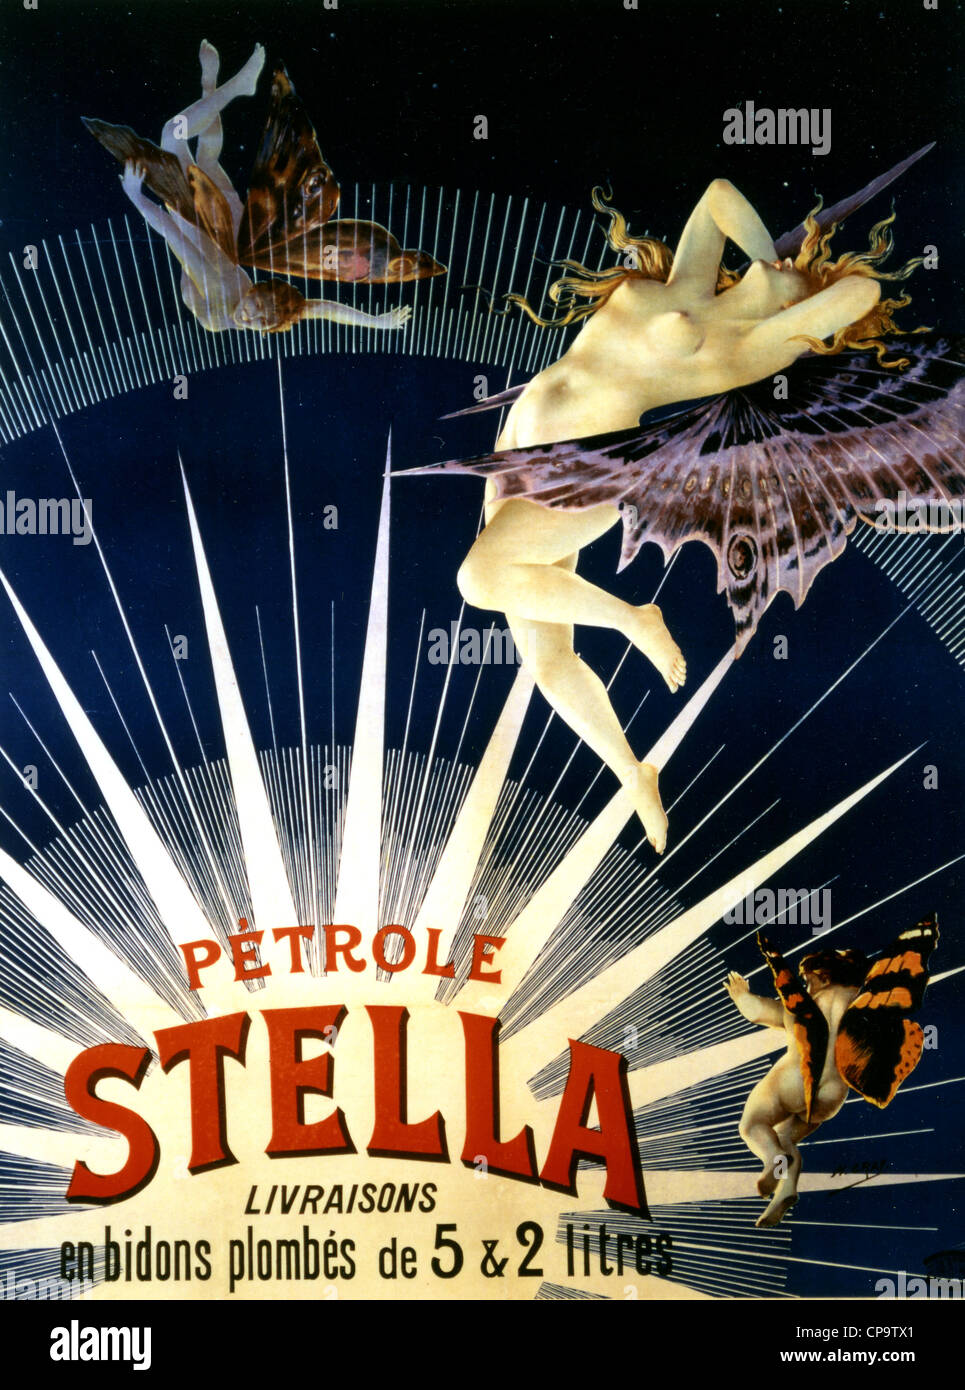 STELLA Poster pour le français à propos de la marque essence 1910 Banque D'Images